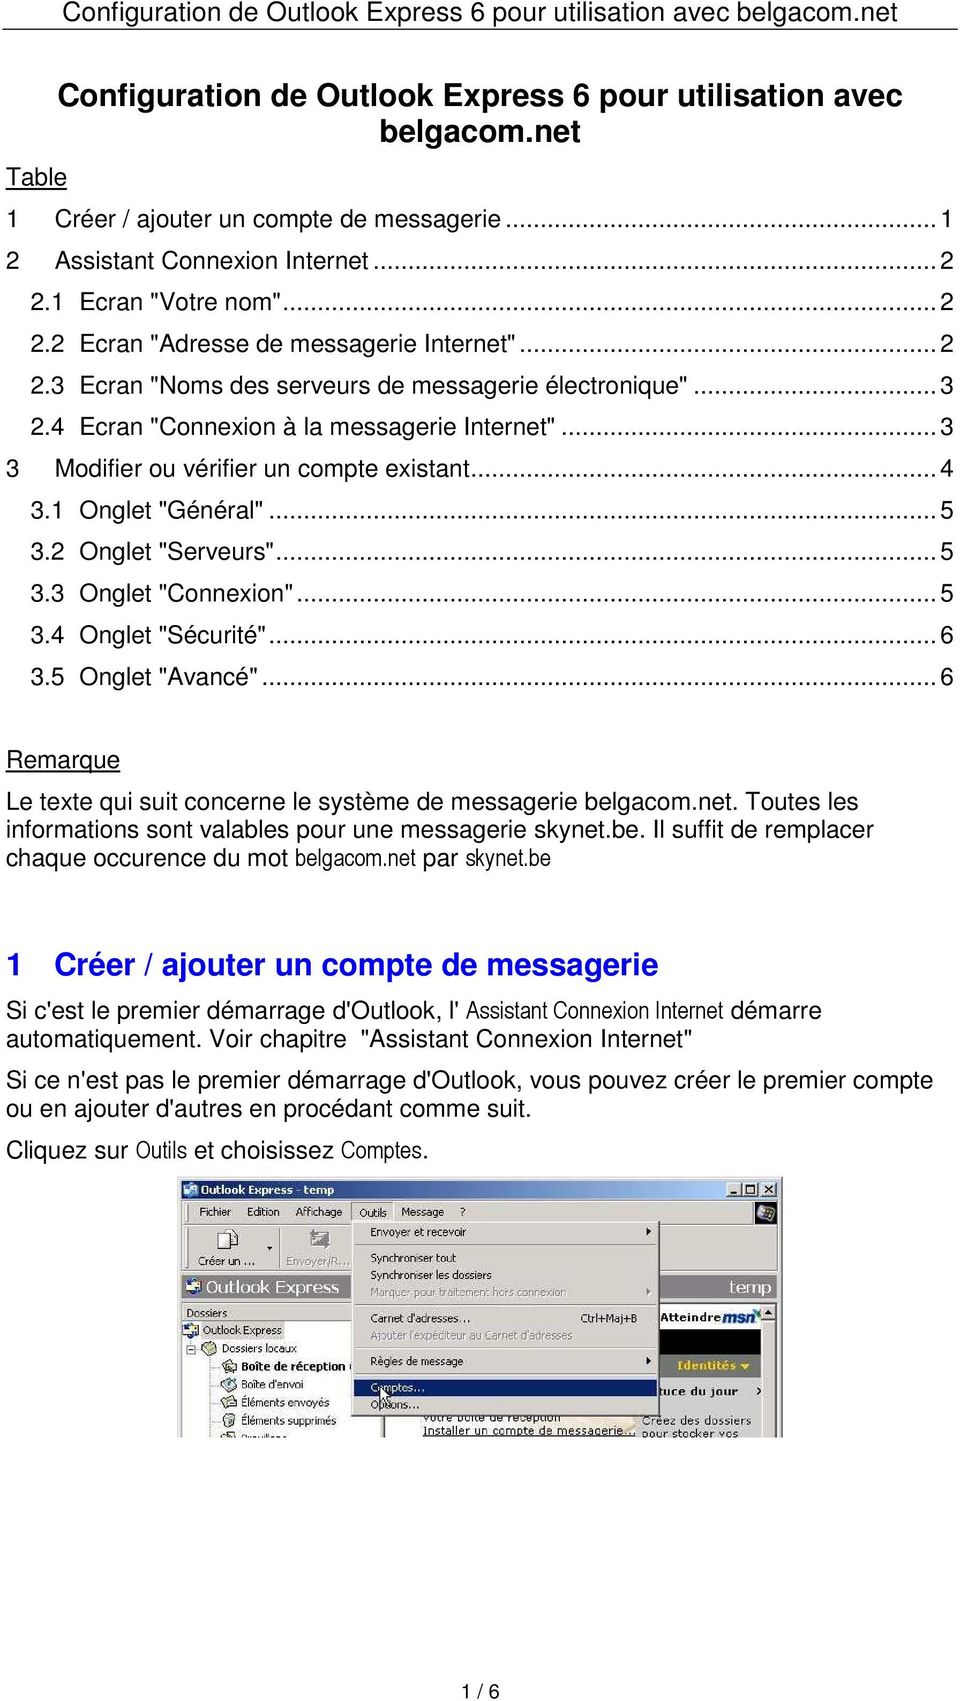 2 Onglet "Serveurs"...5 3.3 Onglet "Connexion"...5 3.4 Onglet "Sécurité"...6 3.5 Onglet "Avancé"...6 Remarque Le texte qui suit concerne le système de messagerie belgacom.net.